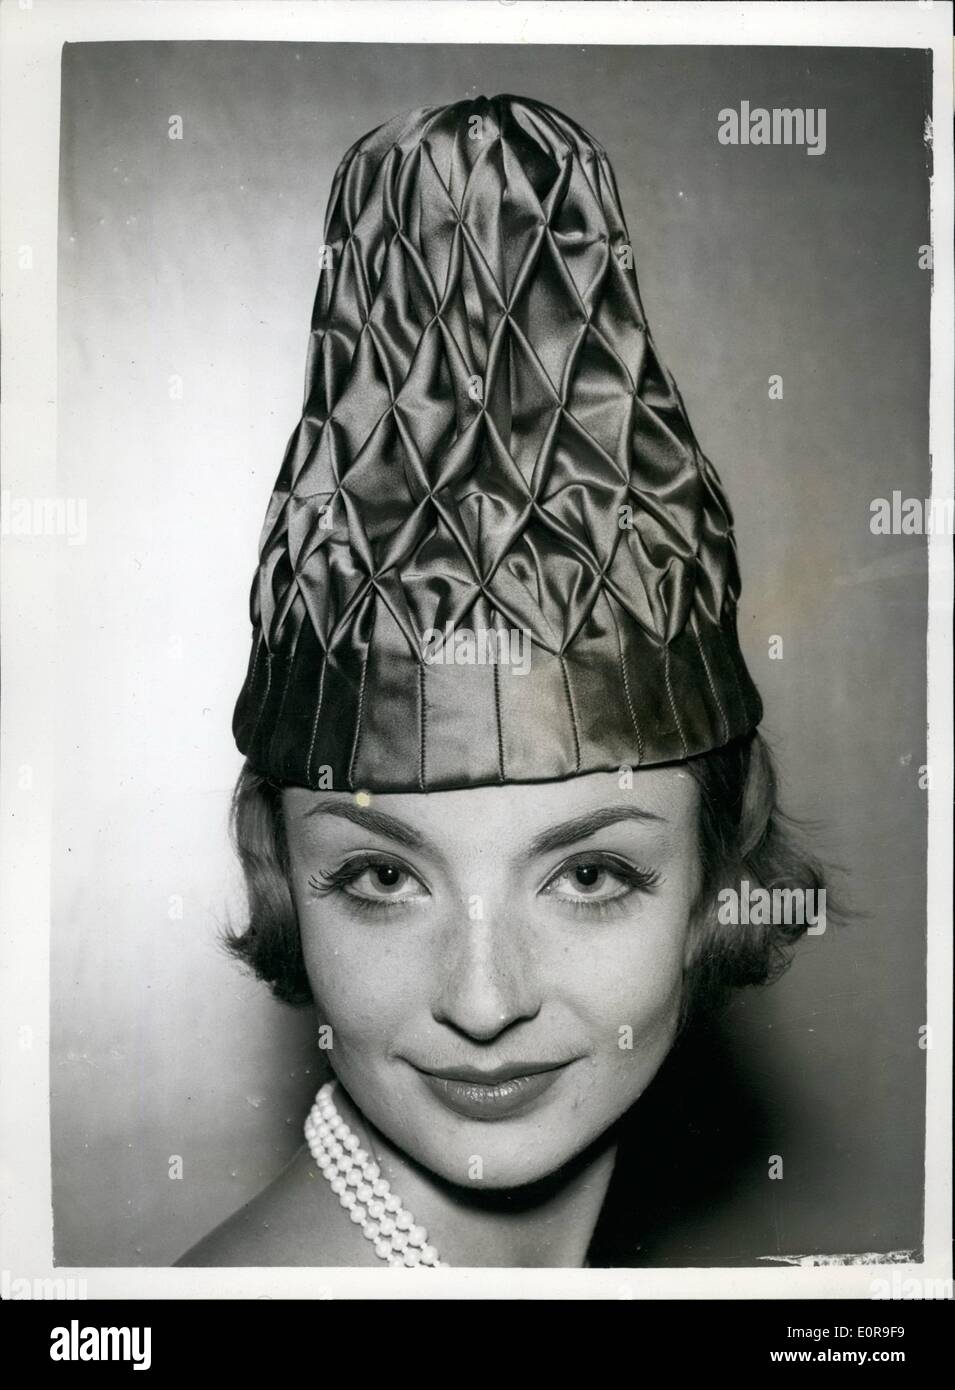 Octubre 10, 1958 - Nuevos sombreros por el Gremio de sombrerería en show.:Ann Grant muestra ''Punchillo'' un sombrero en forma de cono smocked rosa profundo Foto de stock